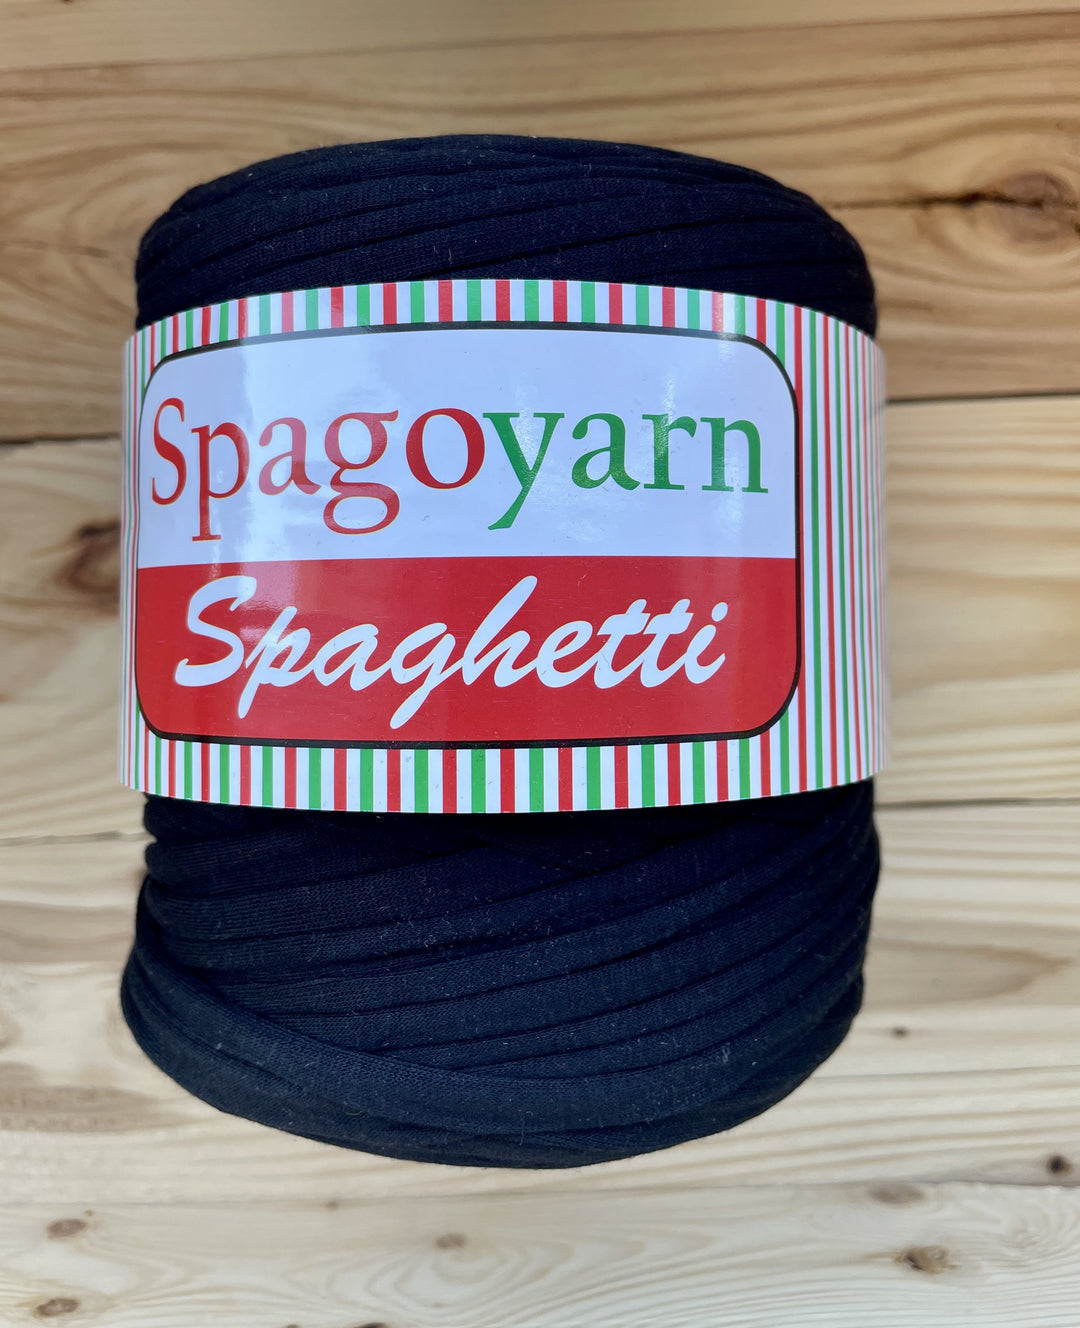 Spaghetti T-Shirt Yarn De Spagoyarn